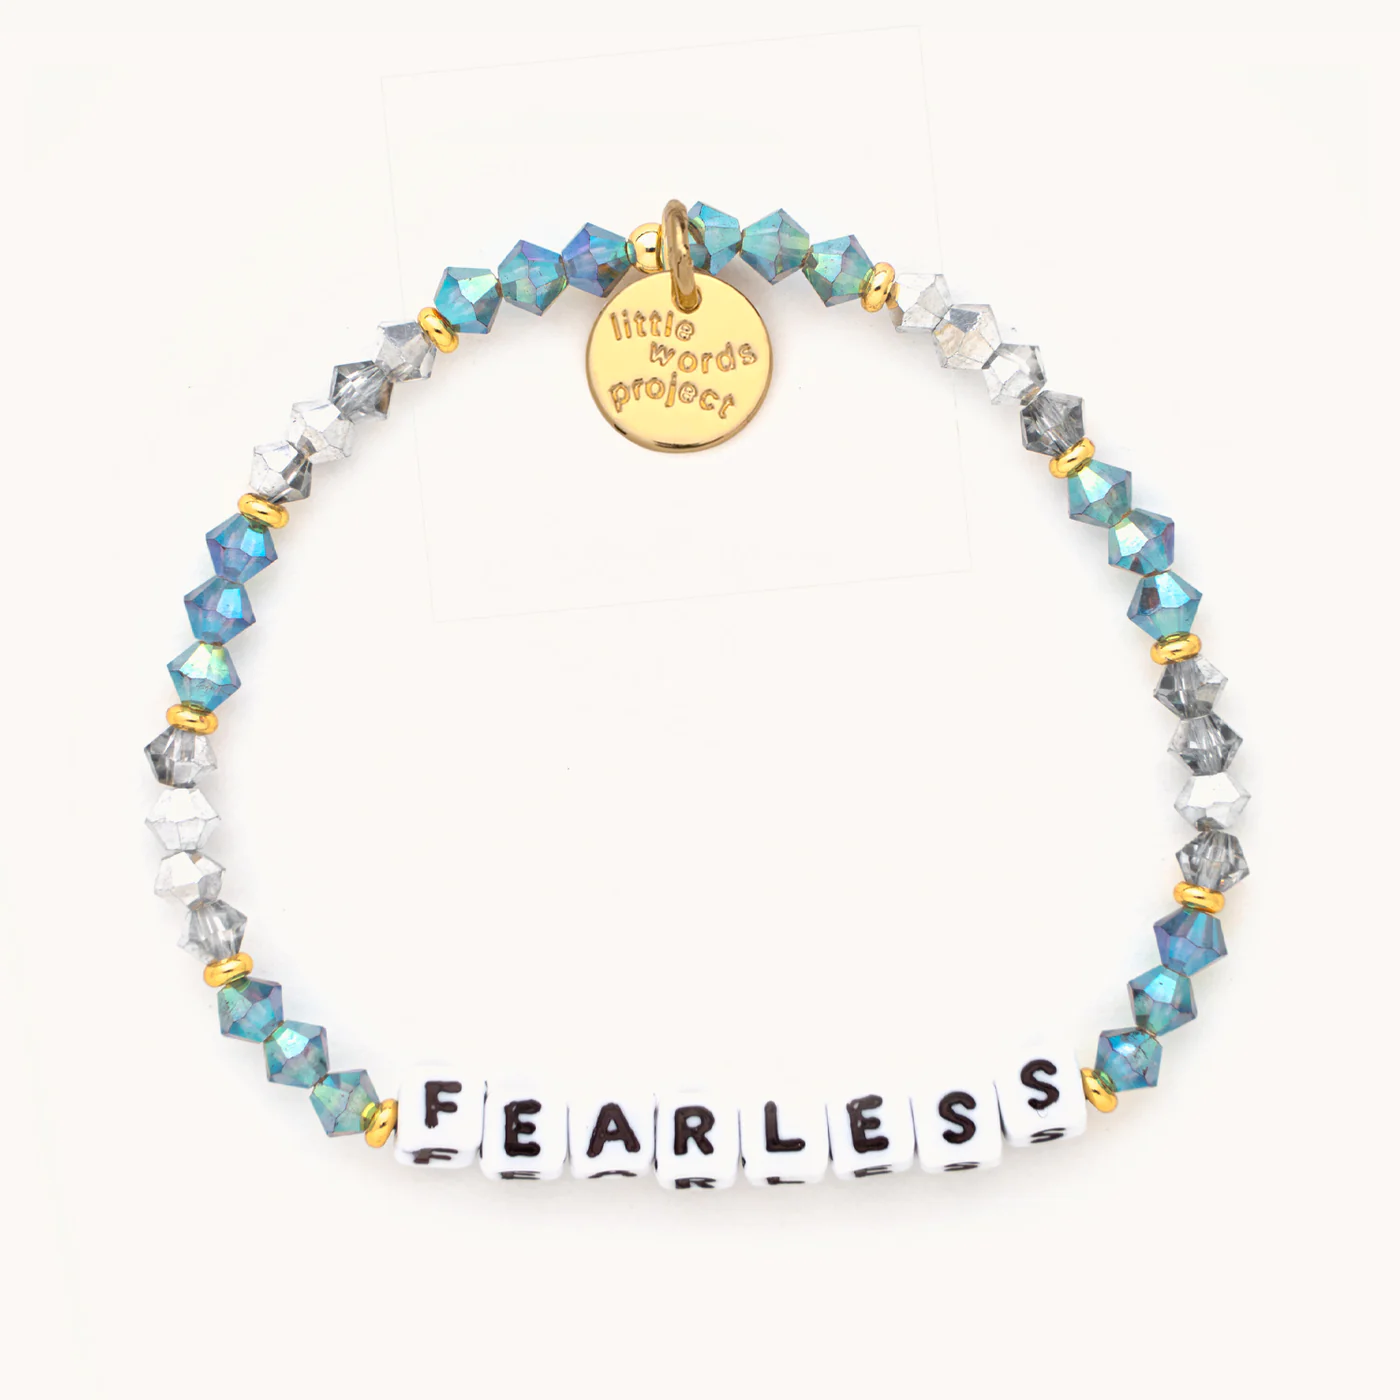 Little Words Project Fearless Teal & Grey Bracelet